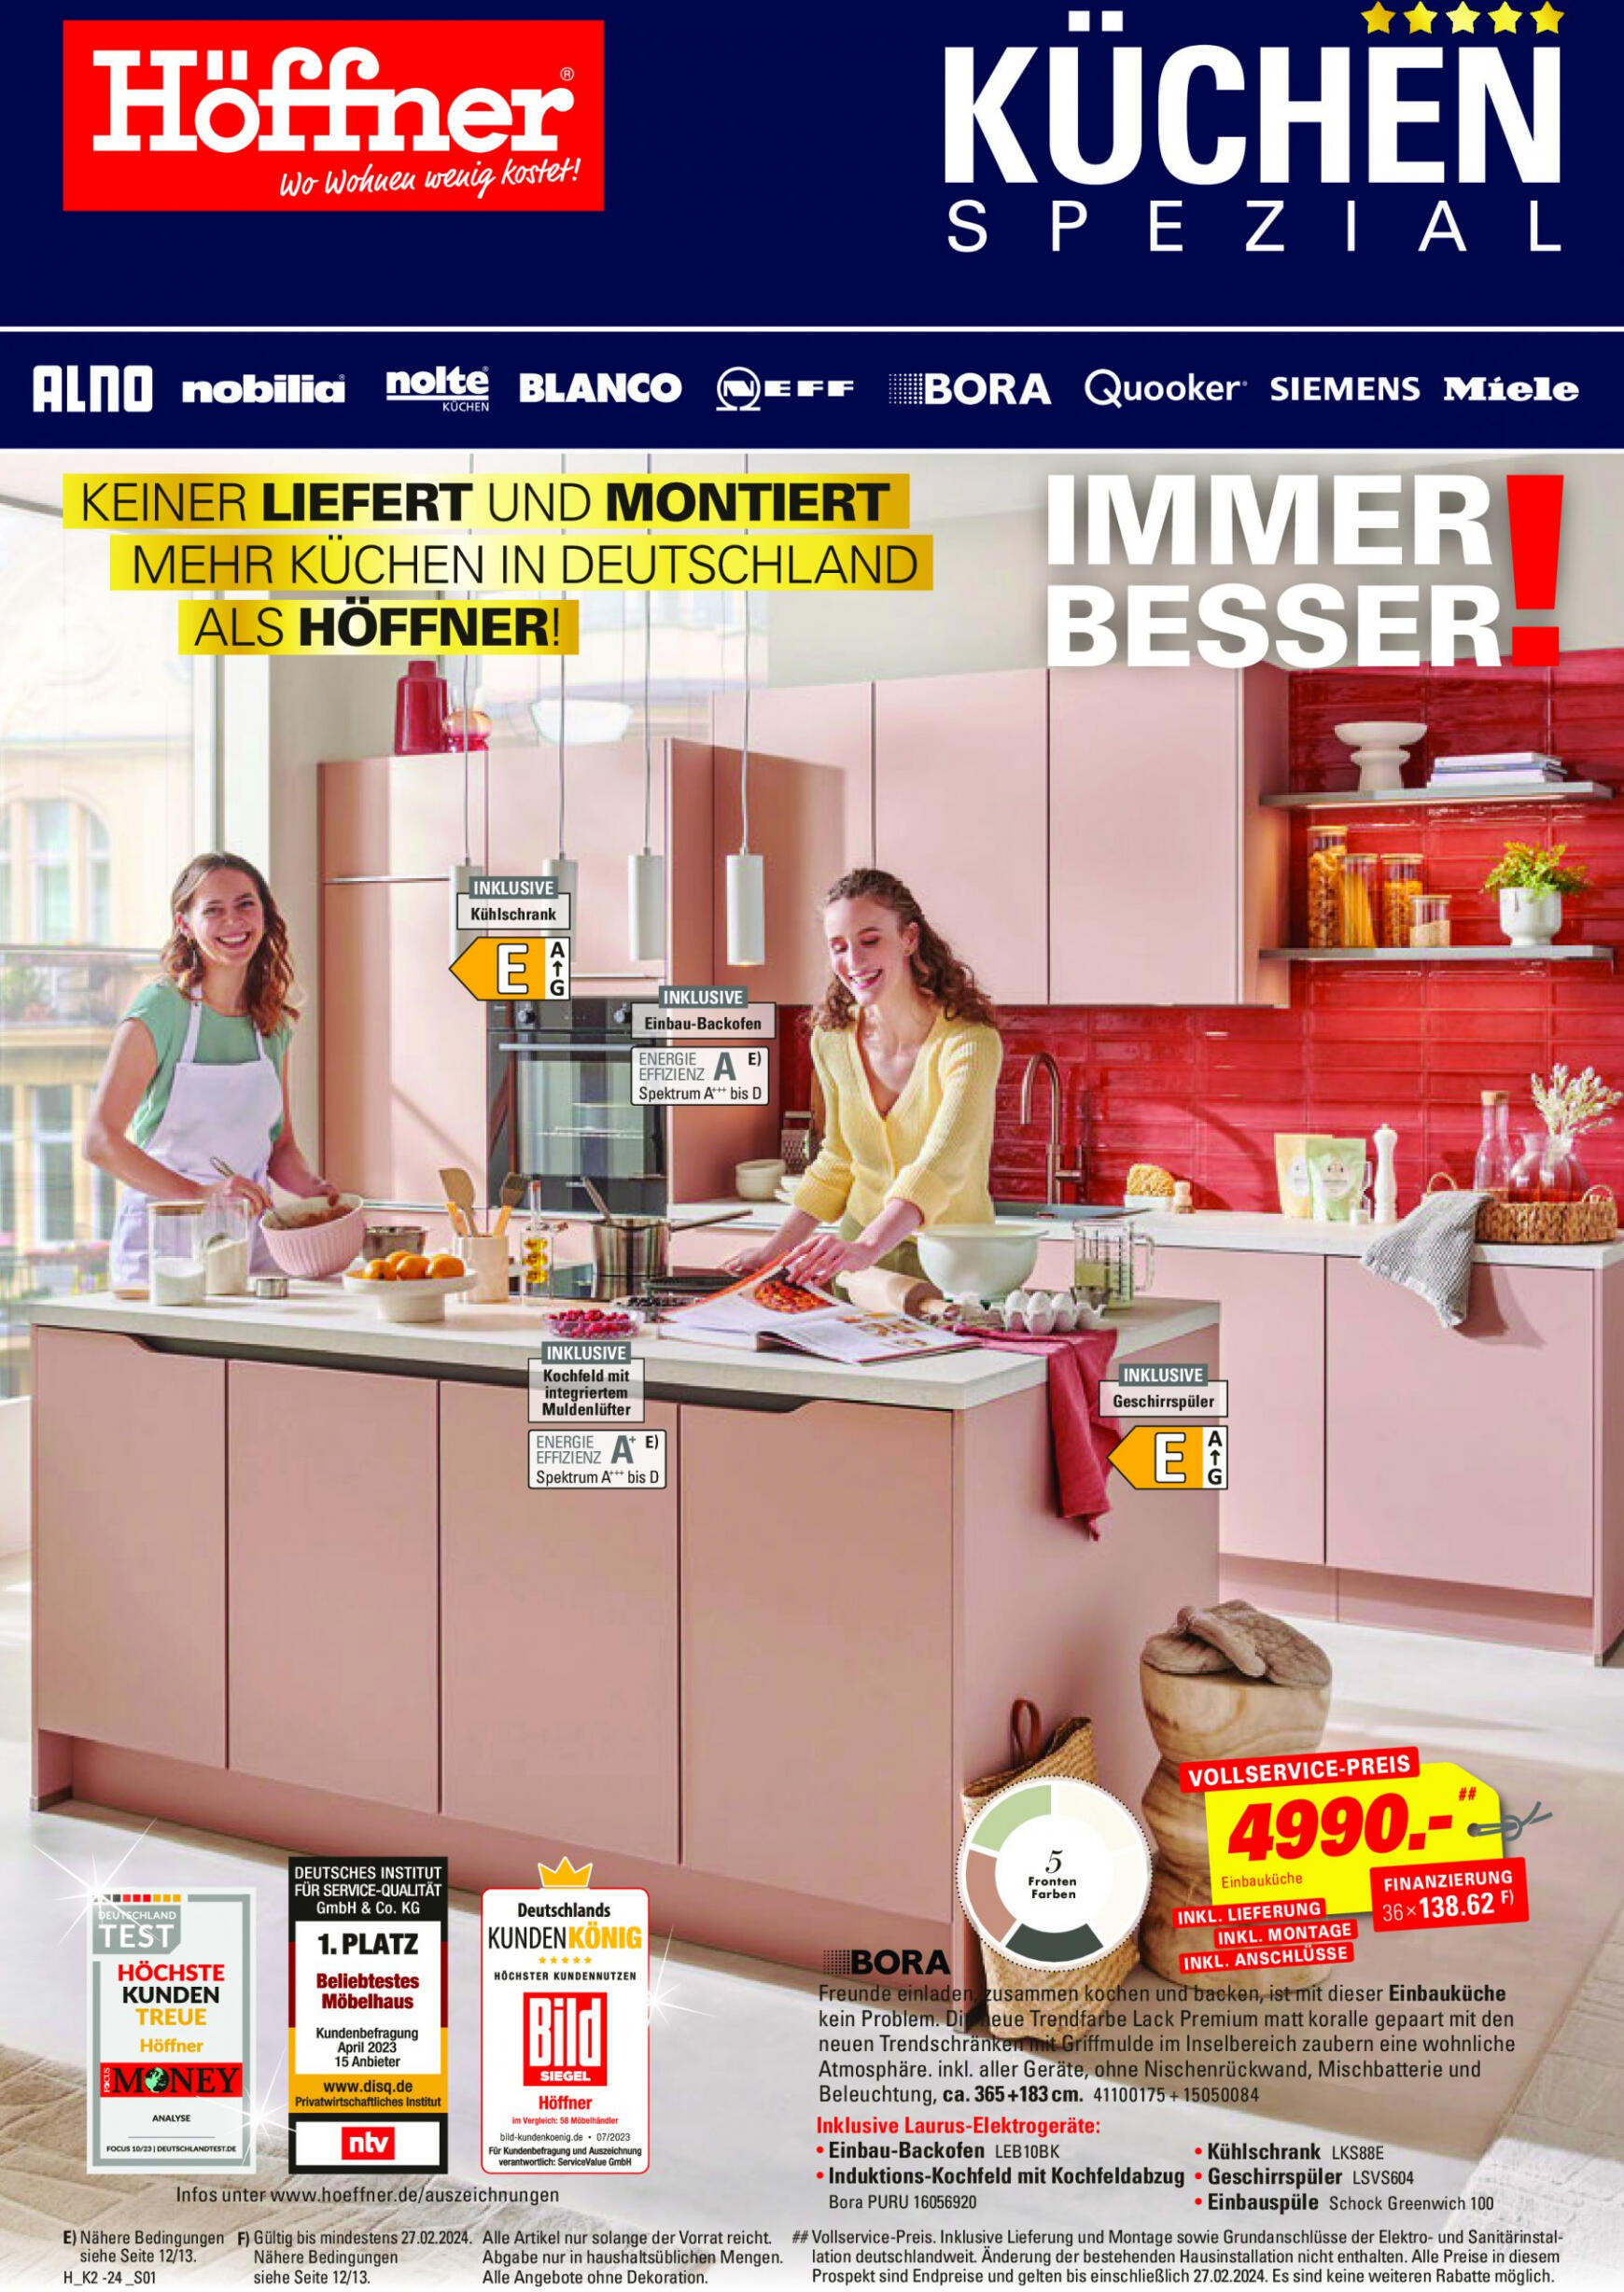 hoffner - Höffner - Küchen spezial gültig ab 13.02.2024 - page: 1